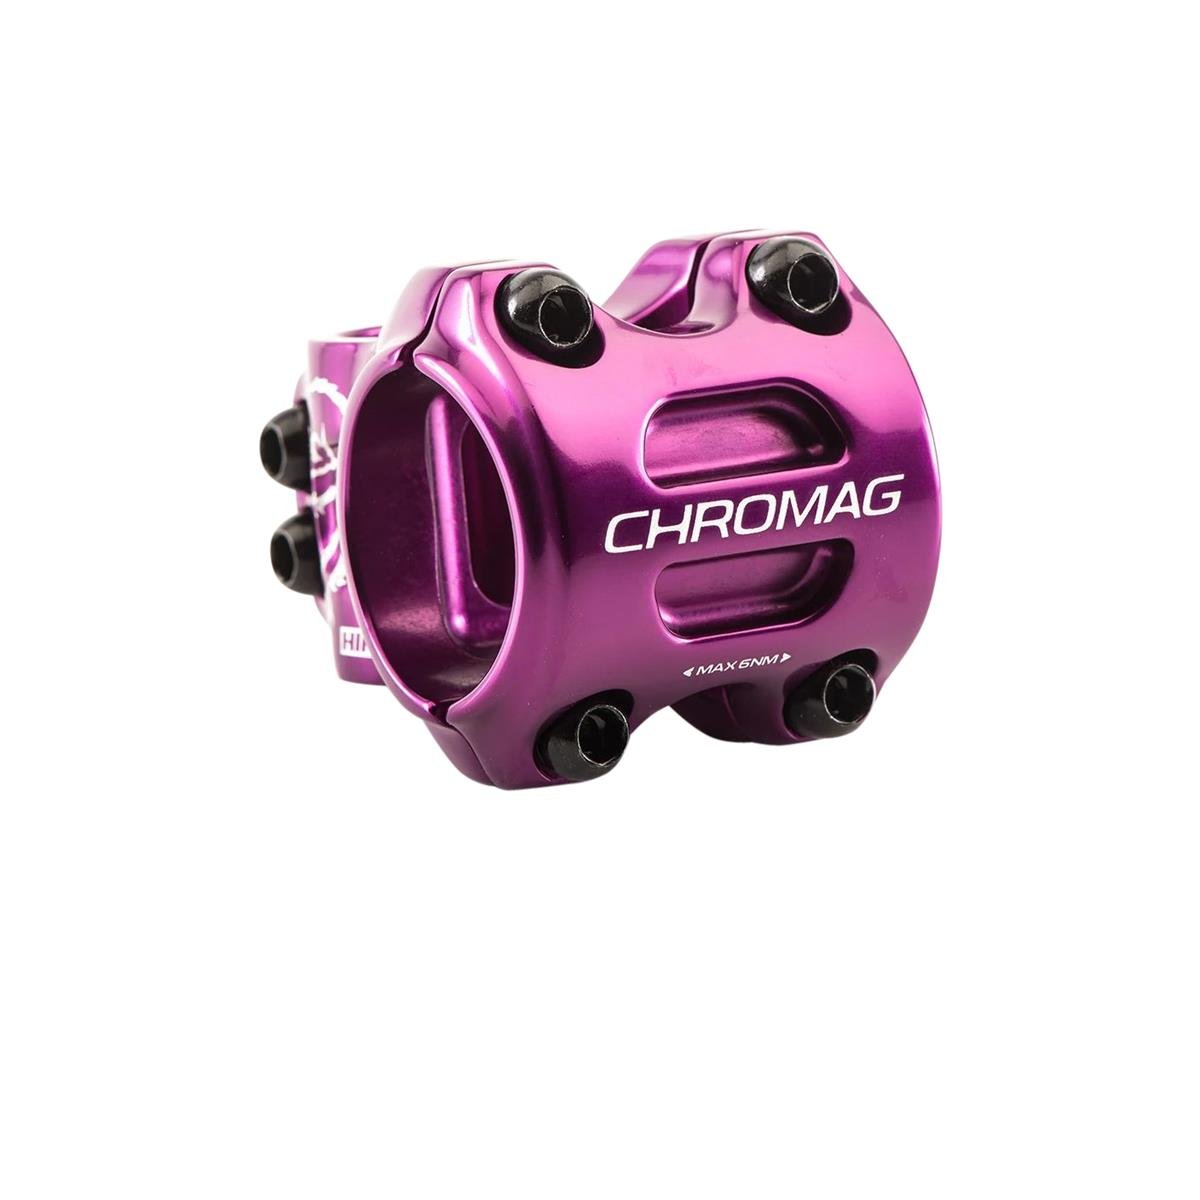 Chromag MTB Stem HIFI 35.0 mm, 35 mm Reach, Purple